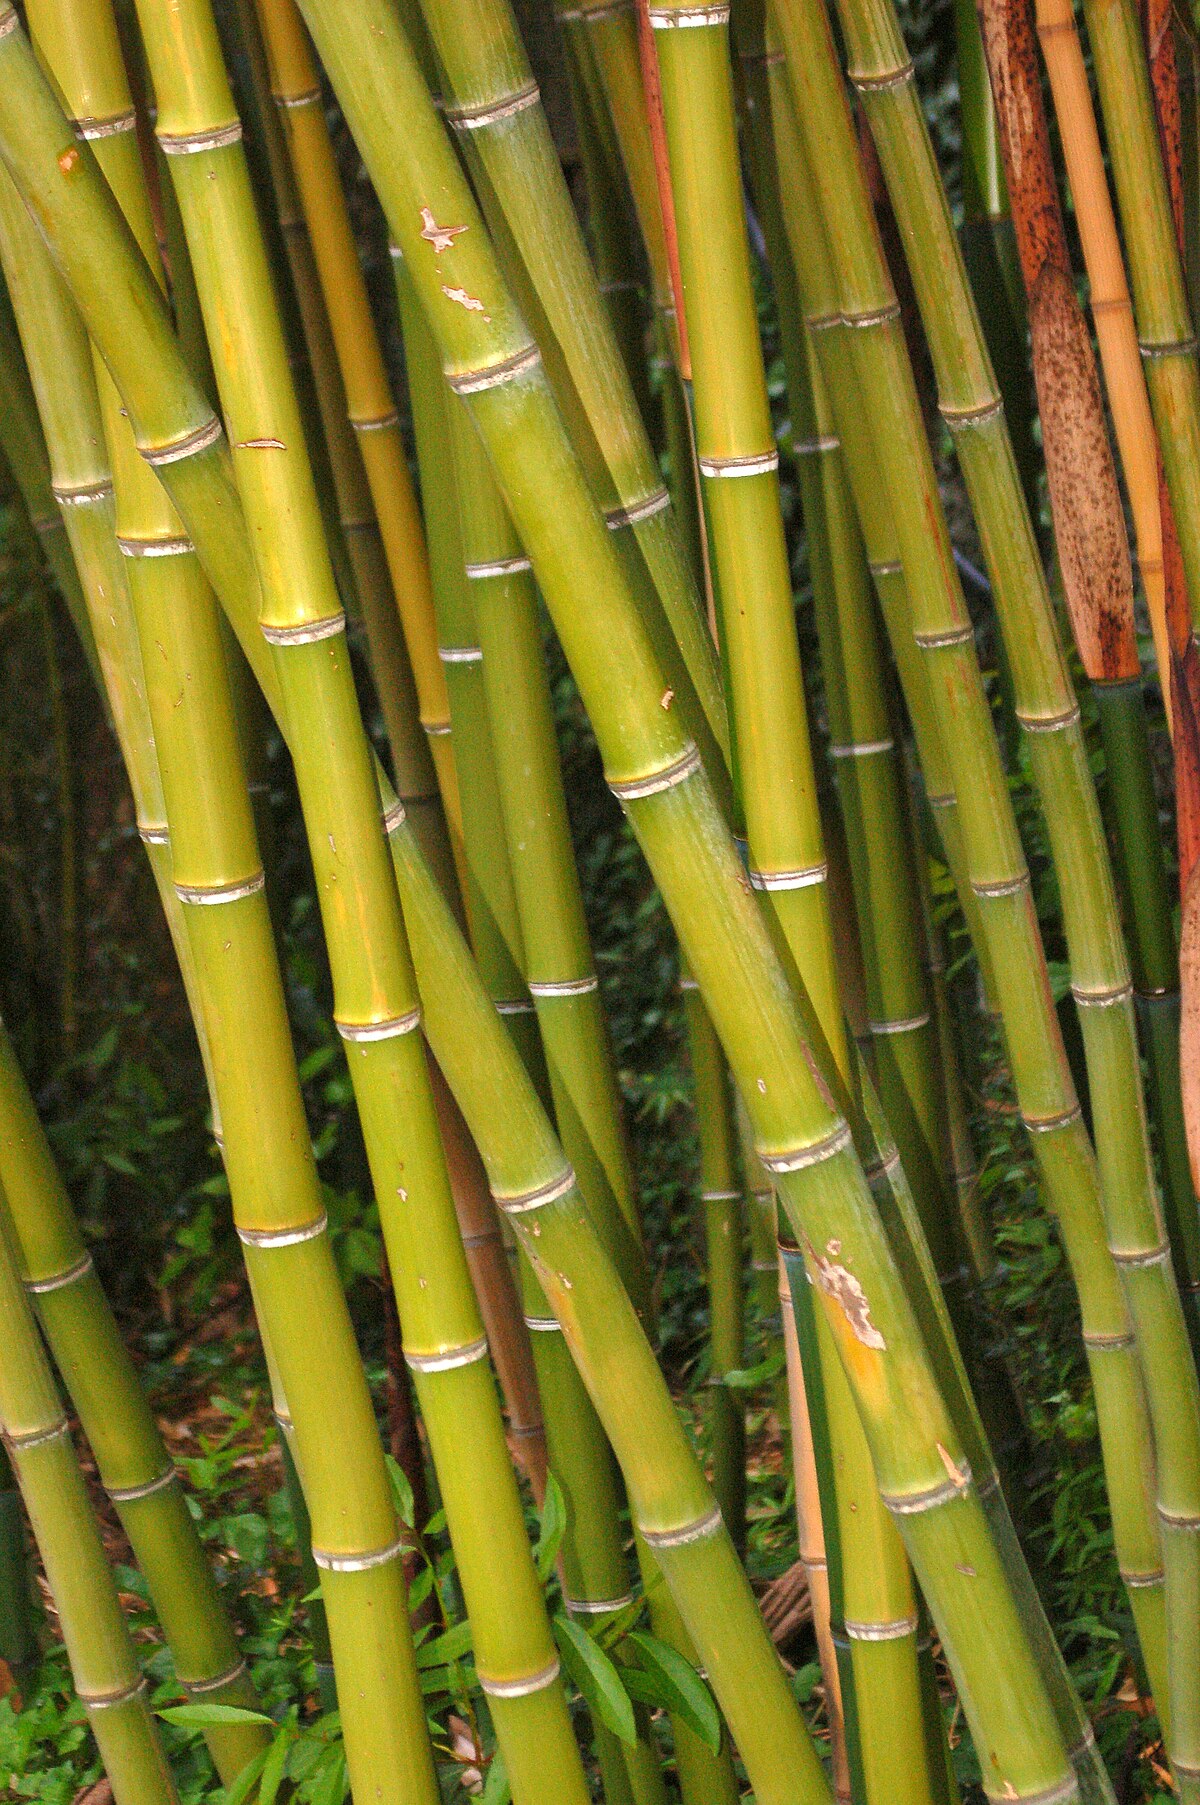 bamboo as buildings material